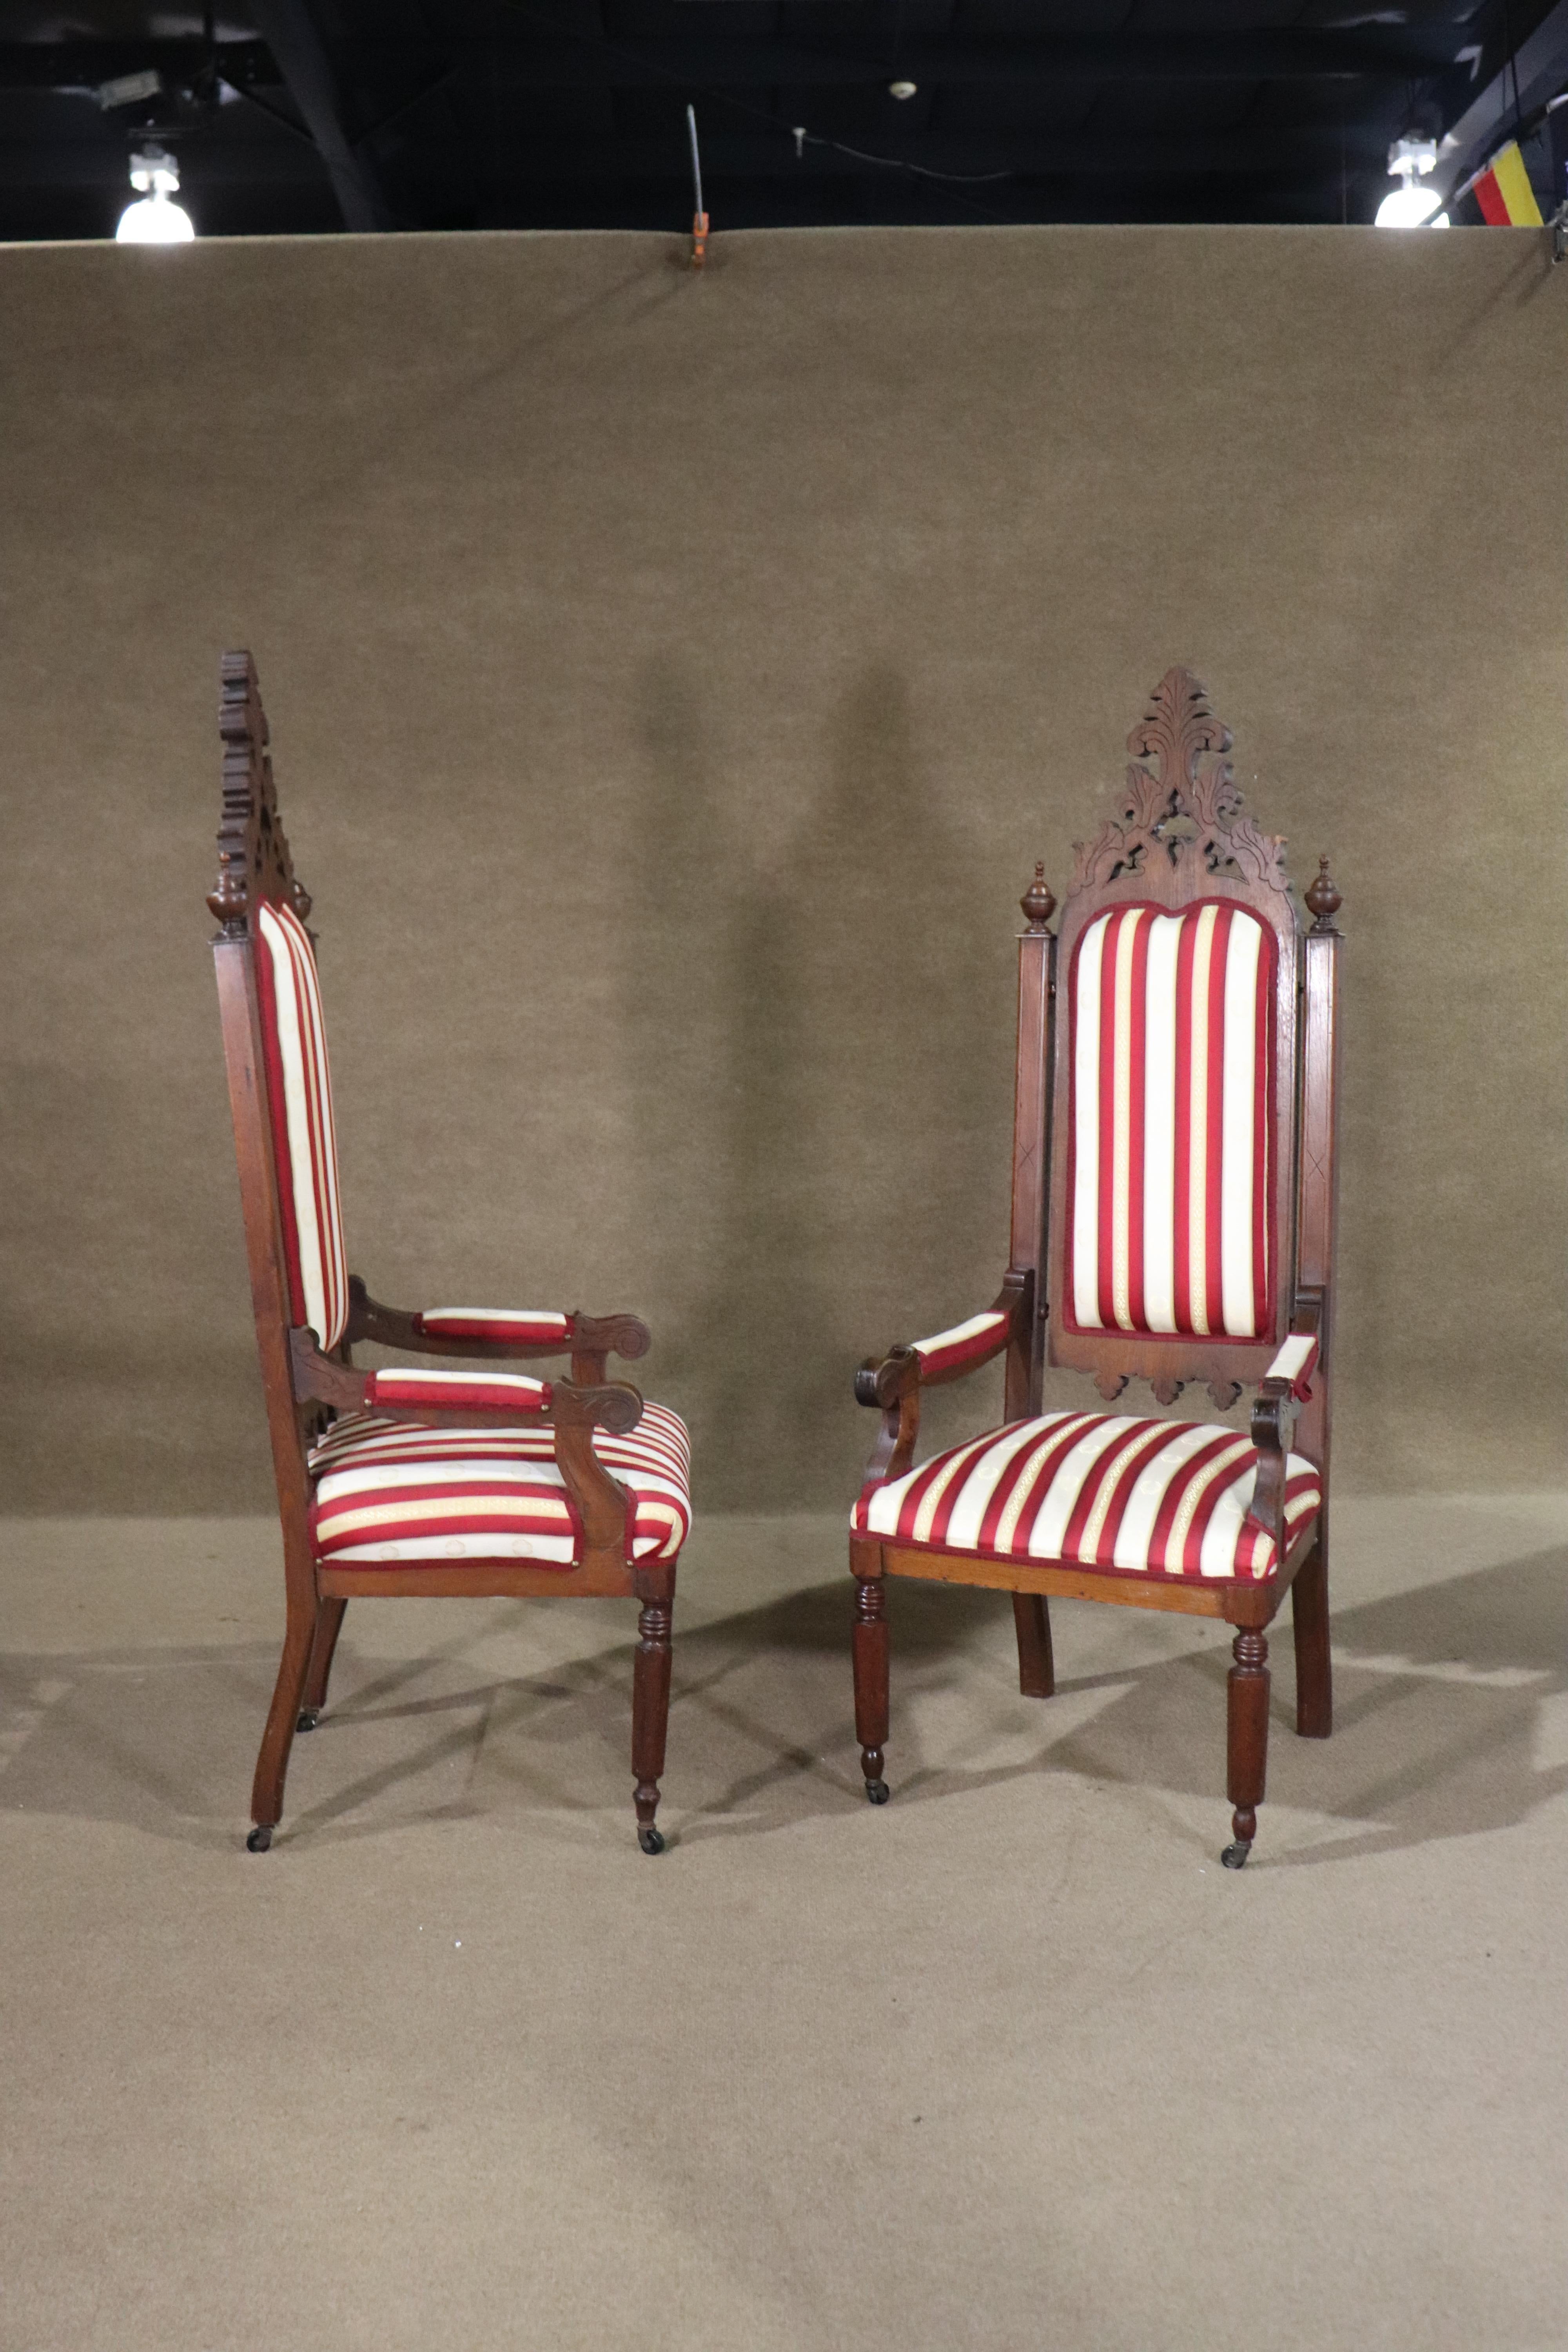 Paire de chaises à trône de style gothique avec dossier sculpté. L'ensemble est monté sur roulettes, avec des détails spectaculaires sur l'ensemble de la pièce.
Veuillez confirmer le lieu NY ou NJ